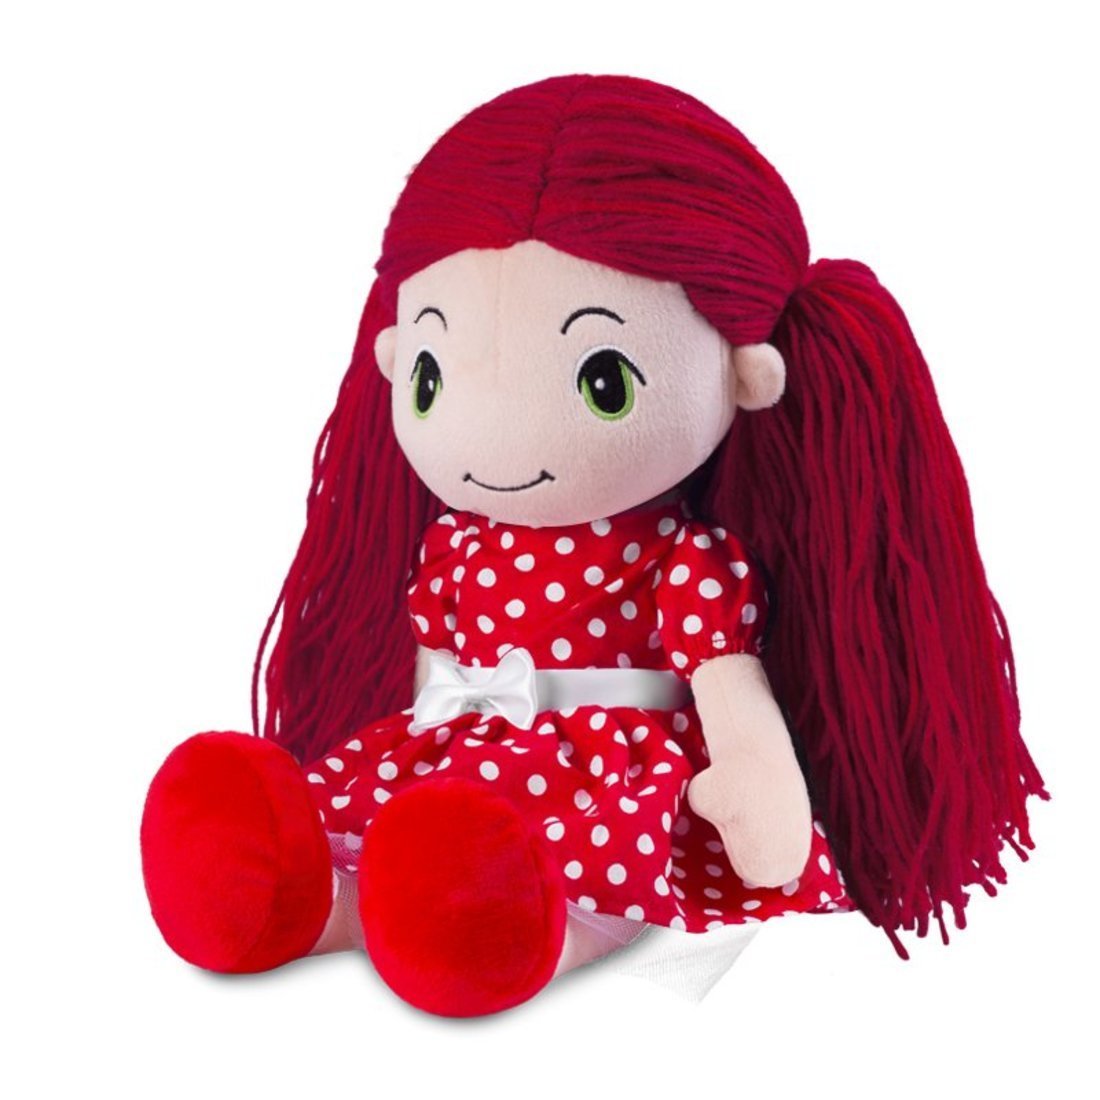 Мягкая игрушка Maxitoys Кукла Стильняшка в красном платье в горошек MT-HH-05042027, 40 см